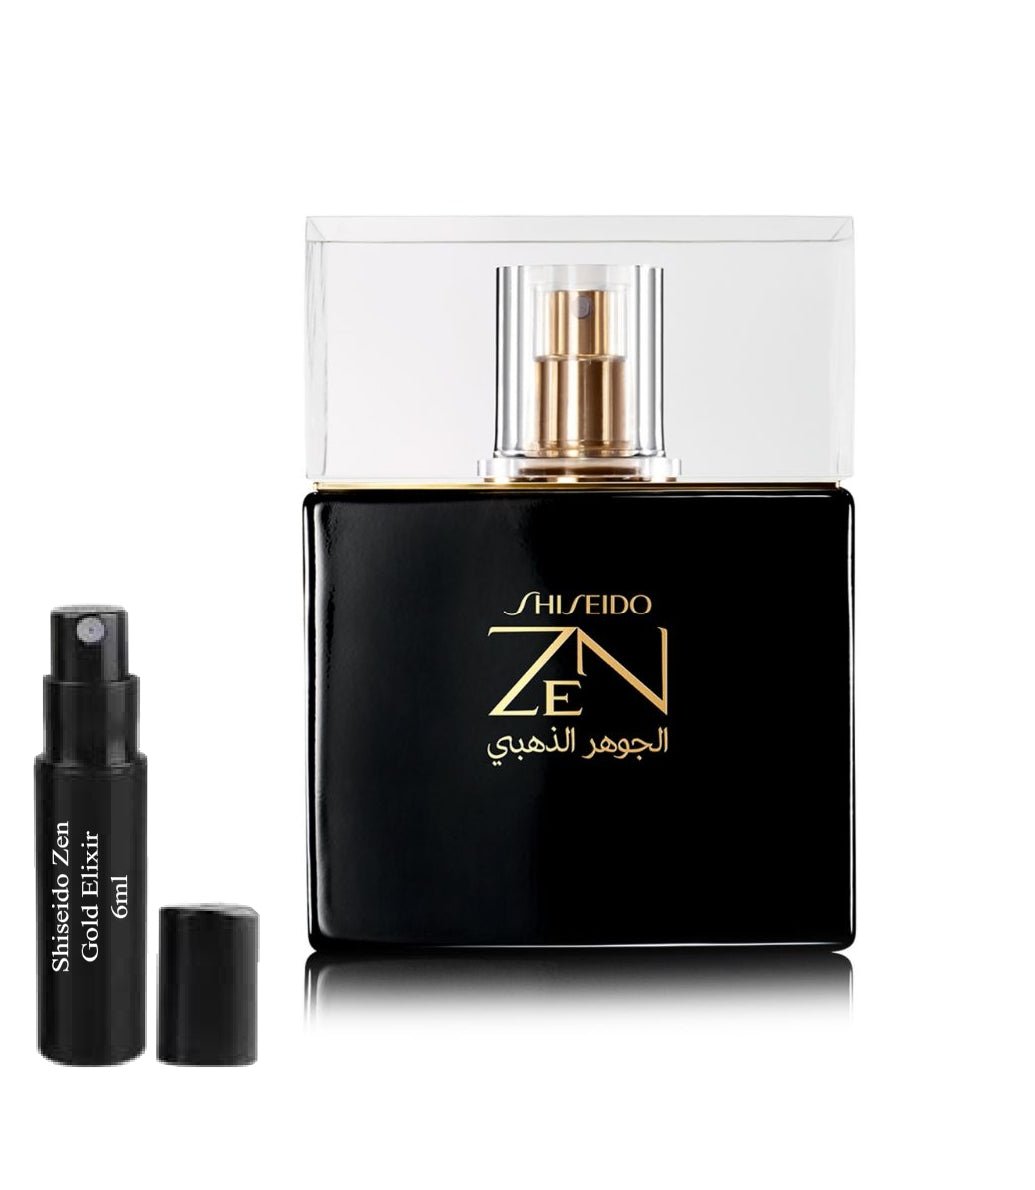 Shiseido Zen Gold Elixir 6ml 0.20 fl. o.z. parfüm minta,  Shiseido Zen Gold Elixir 6ml 0.20 fl. o.z. campione di profumo,  Shiseido Zen Gold Elixir 6ml 0.20 fl. o.z. amostra de perfume,  Shiseido Zen Gold Elixir 6ml 0.20 fl. o.z. 官方香水样品,  Mostră de parfum Shiseido Zen Gold Elixir 6ml 0.20 fl. o.z